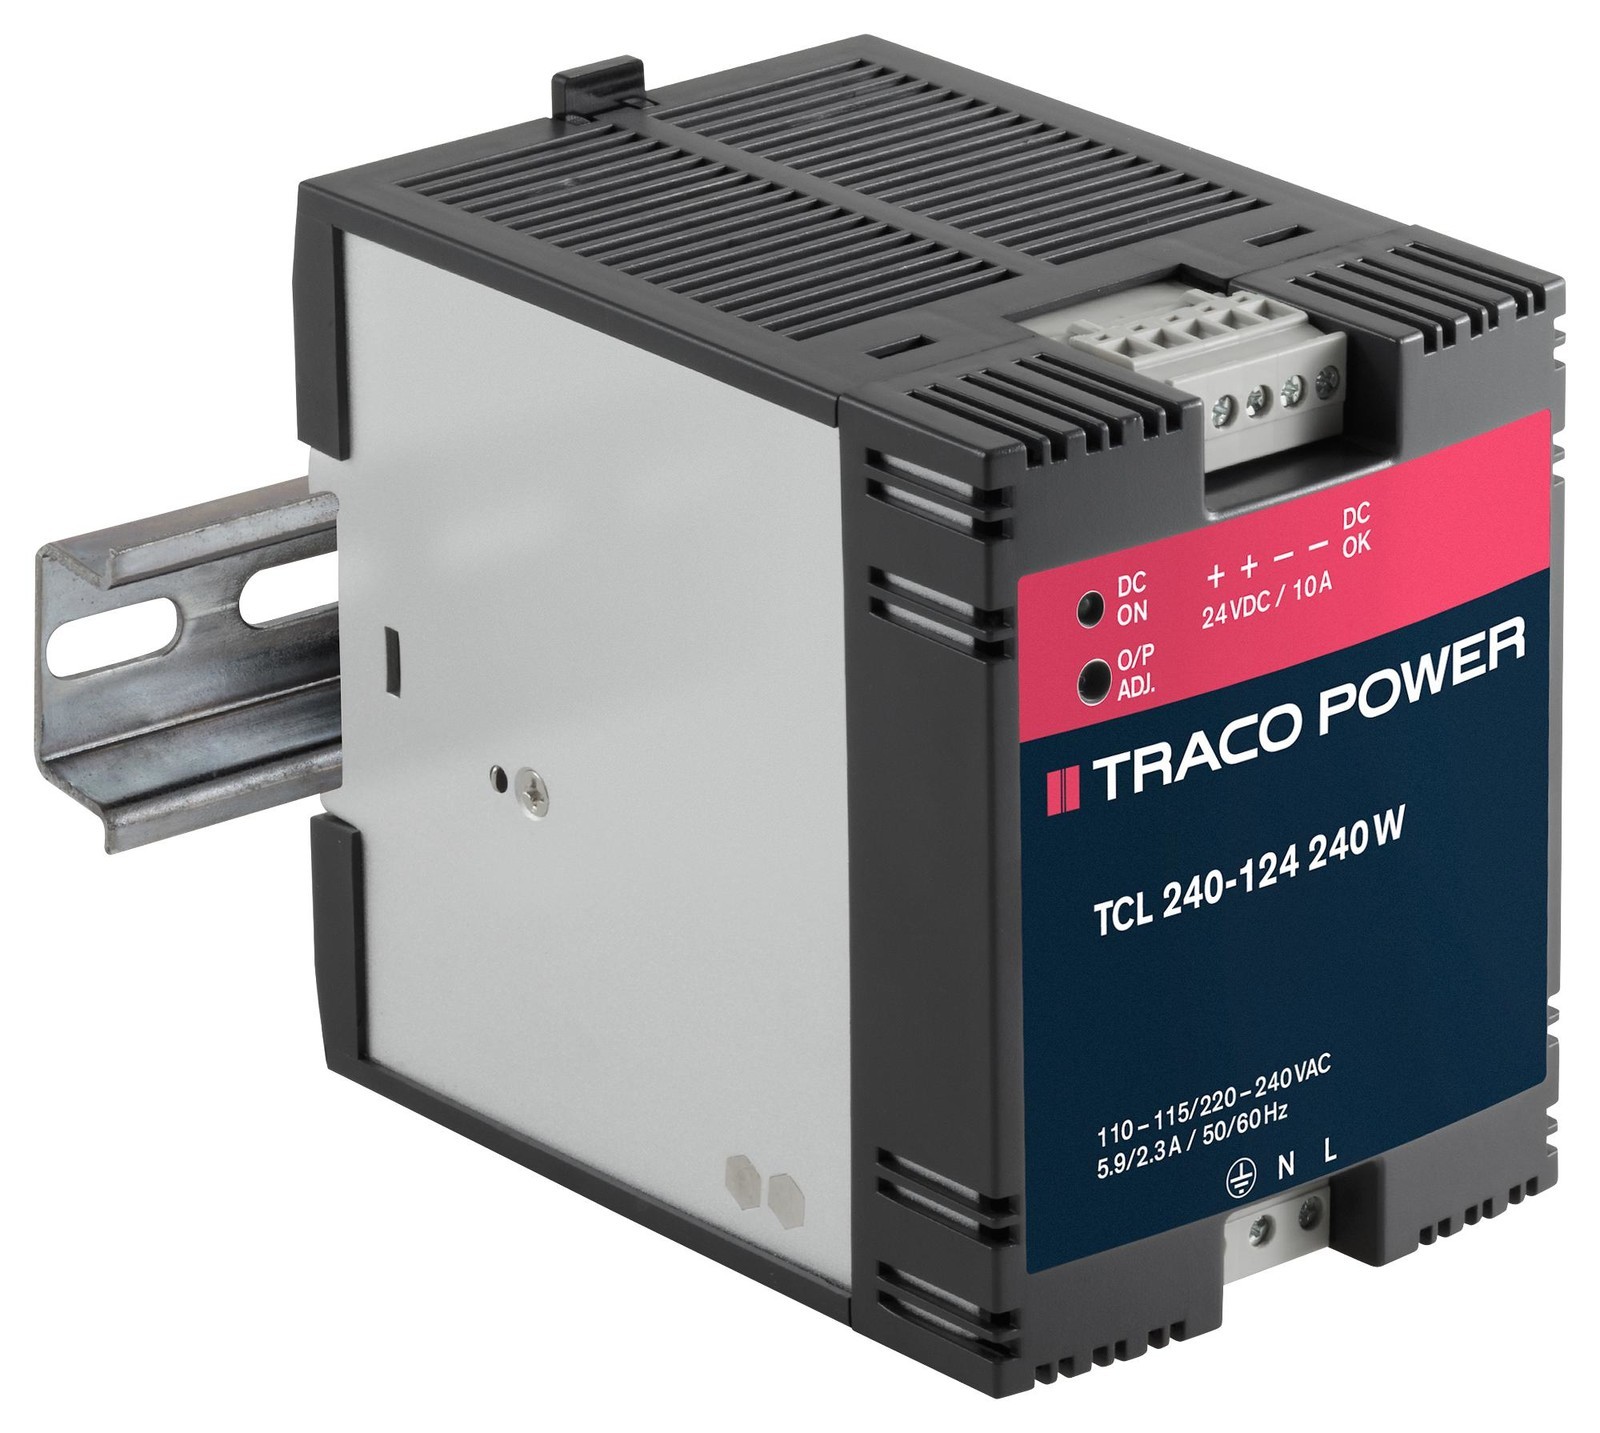 TRACO Power Tcl 240-124 Psu, Ac/dc, 10A, 240W, Din